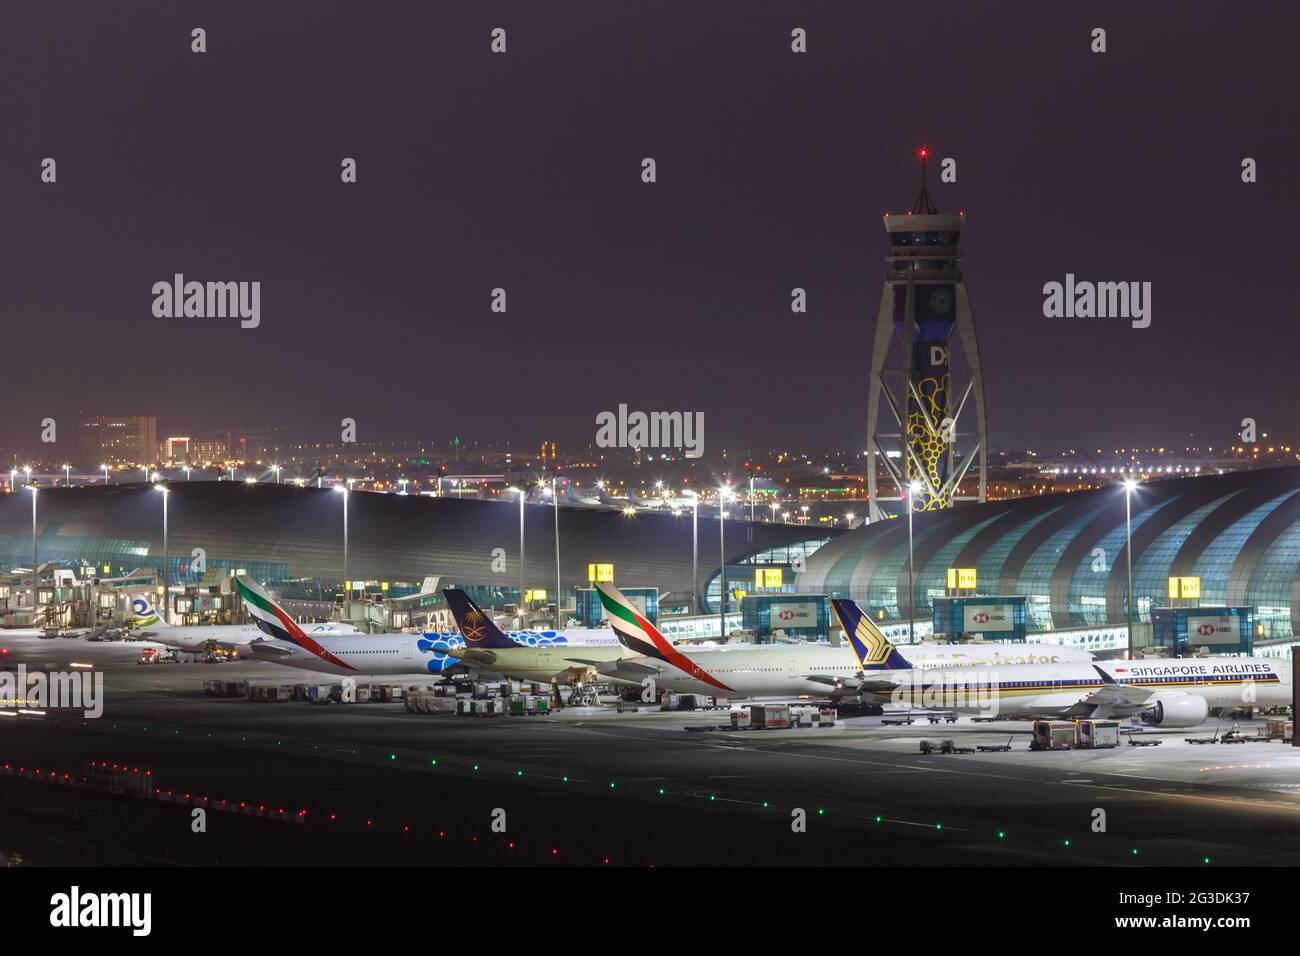 Dubai, United Arab Emirates - May 27, 2021: Airplanes at Dubai airport (DXB) in the United Arab Emirates. Stock Photo